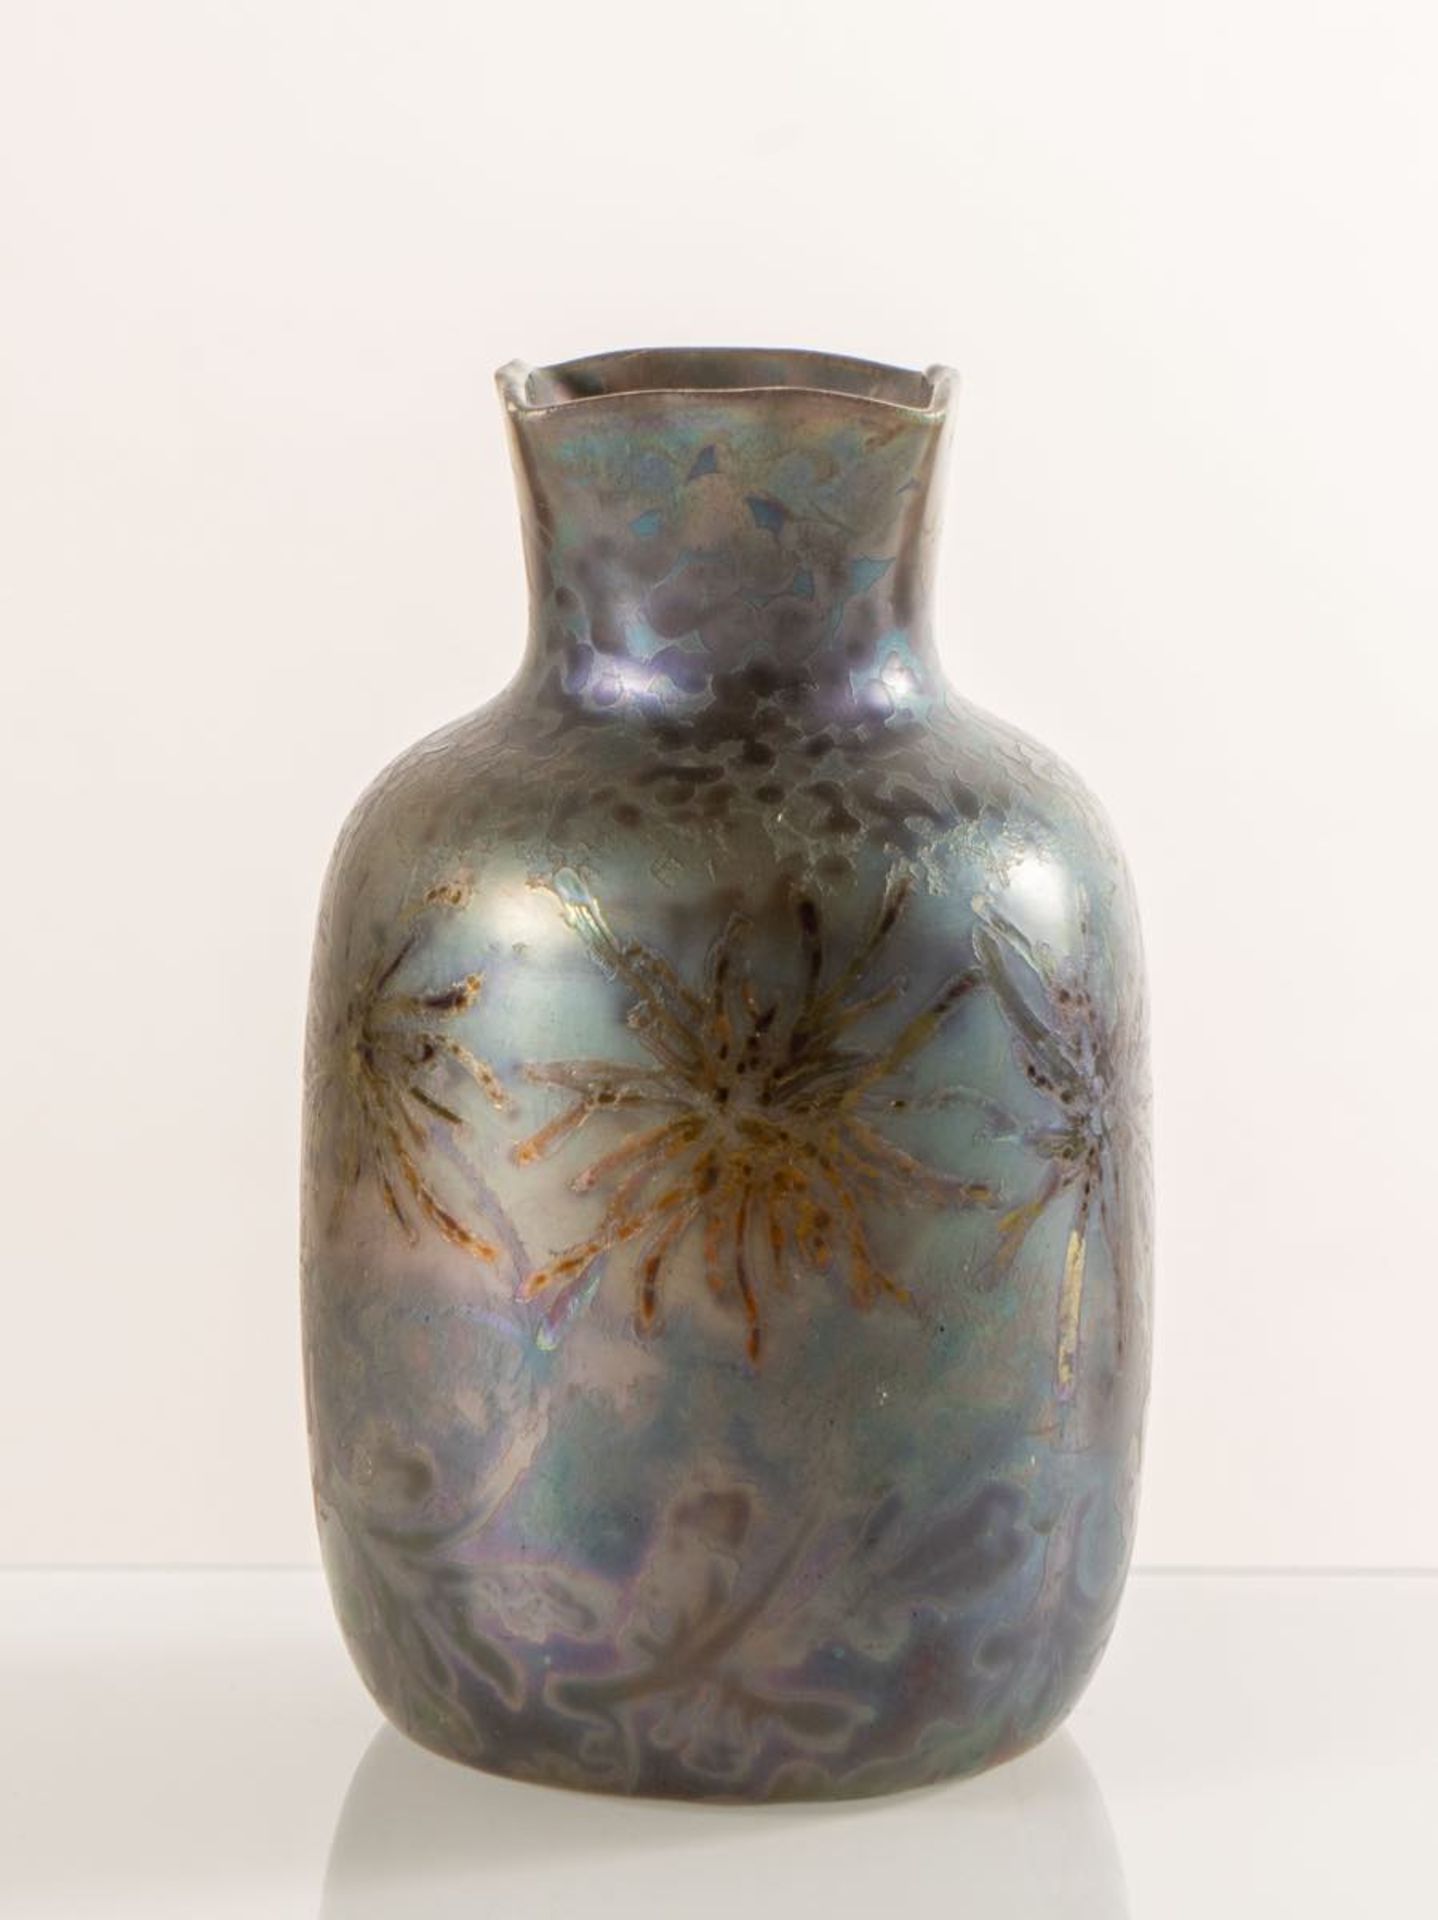 Clément Massier, Piccolo vaso in ceramica, 1890 - 1910.Corpo a sezione globulare con imboccatura